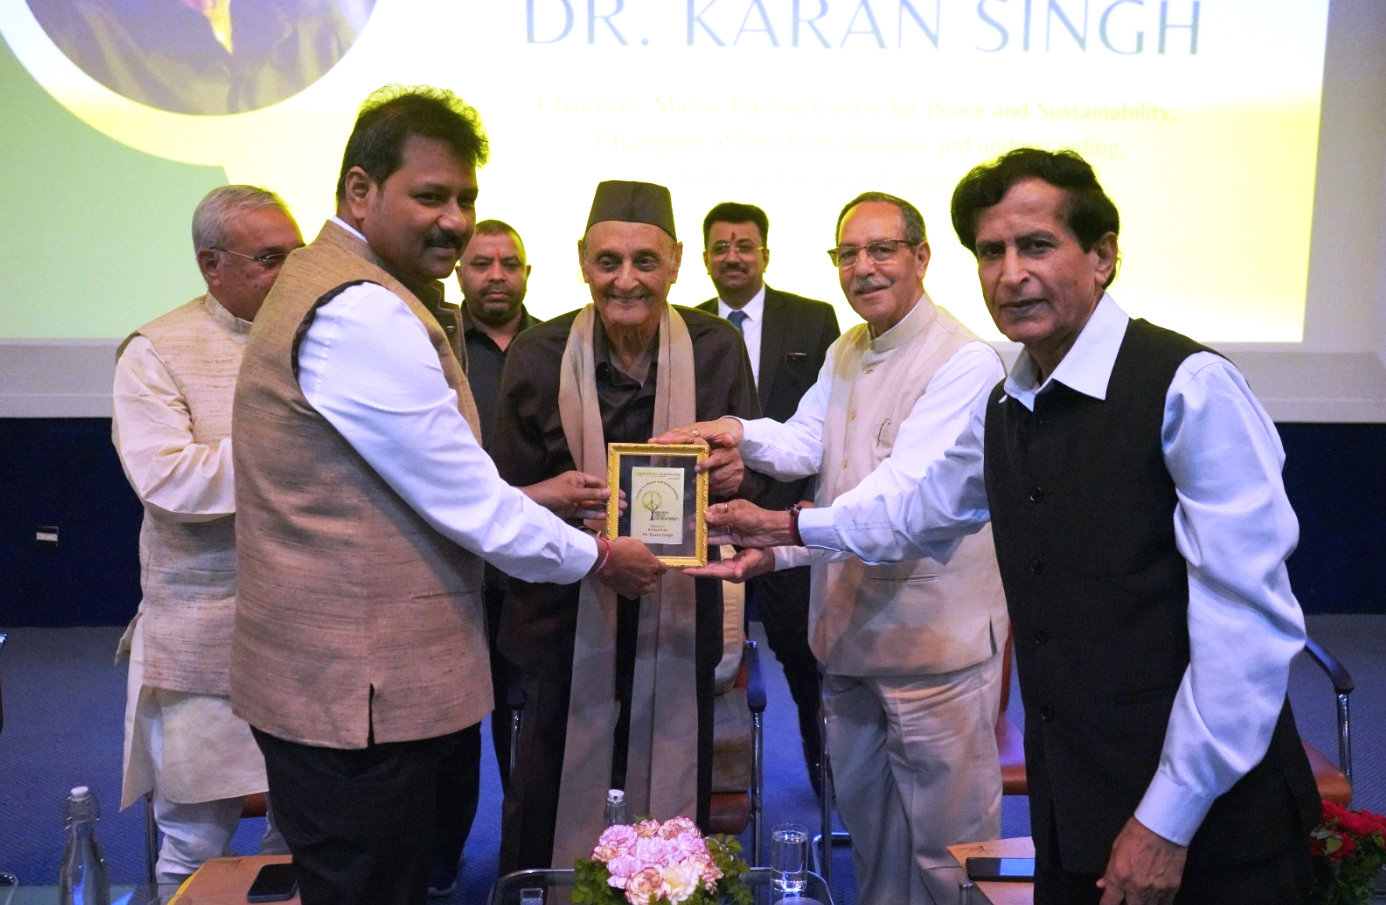 पद्म विभूषण डॉ. करण सिंह ने मानव रचना सेंटर फॉर पीस एंड सस्टेनेबिलिटी के एडवाइजरी बोर्ड की चौथी बैठक की अध्यक्षता की